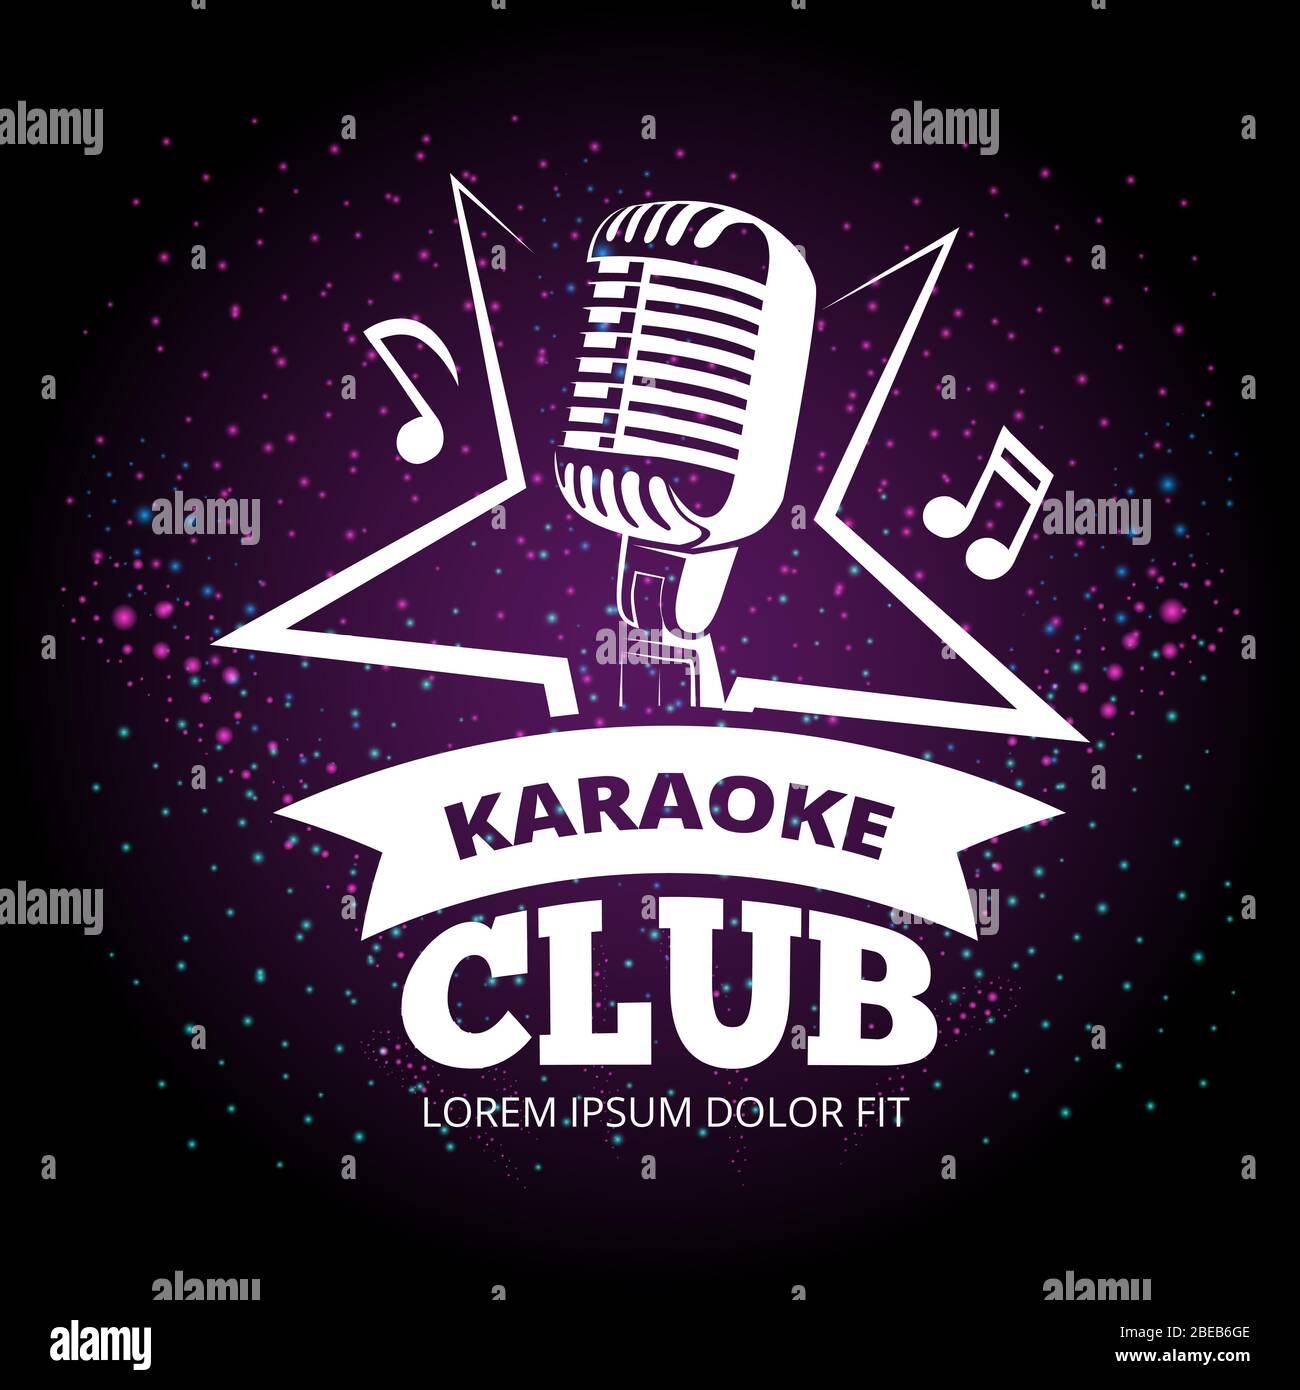 Motif vectoriel flambant flambant dans un club de karaoké. Illustration du label Karaoke Music Club Illustration de Vecteur